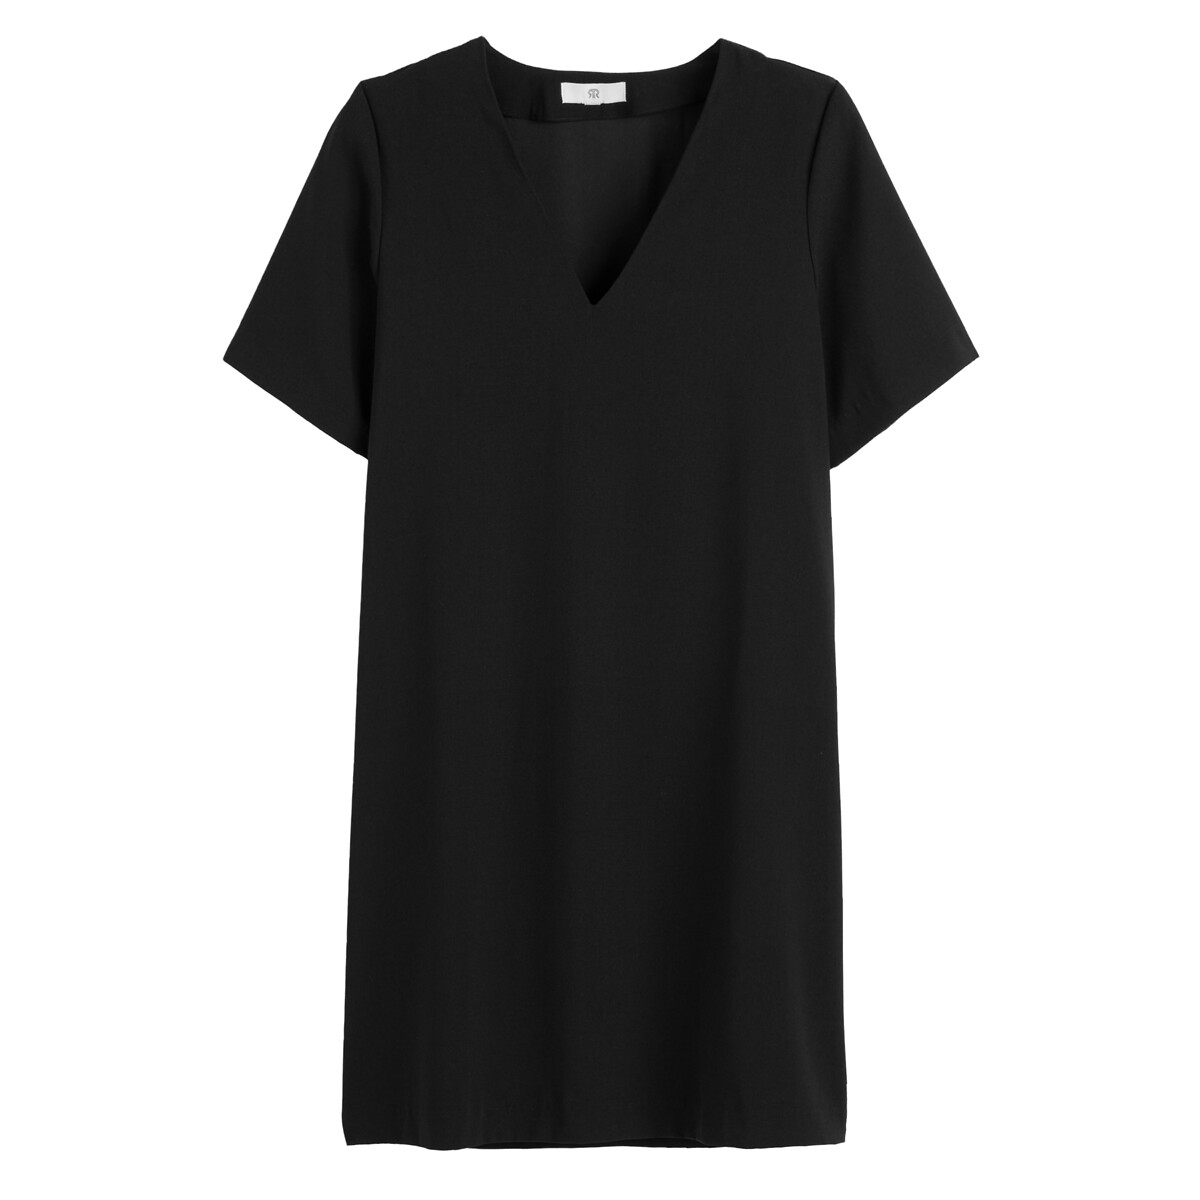 Платье Короткое с V-образным вырезом короткие рукава 56 черный LaRedoute, размер 56 - фото 5